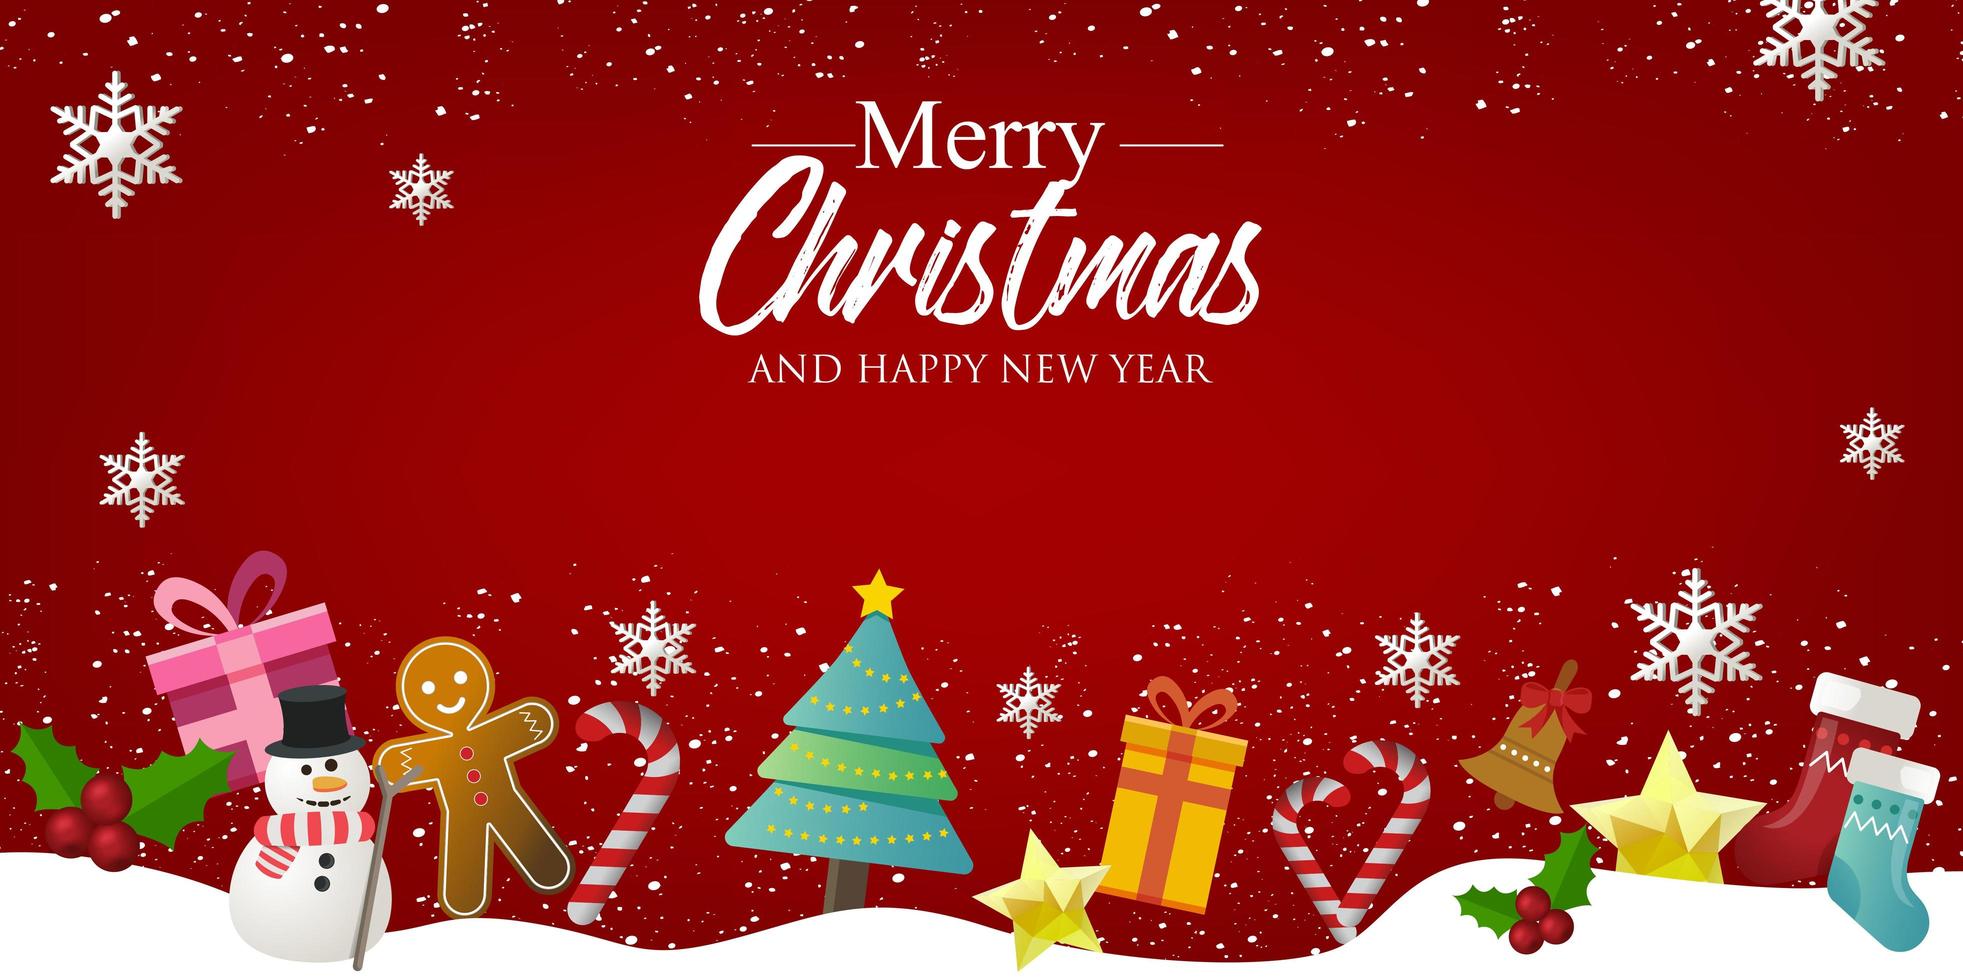 banner de Natal com fundo e decorações de Natal. texto feliz Natal e feliz ano novo. vetor